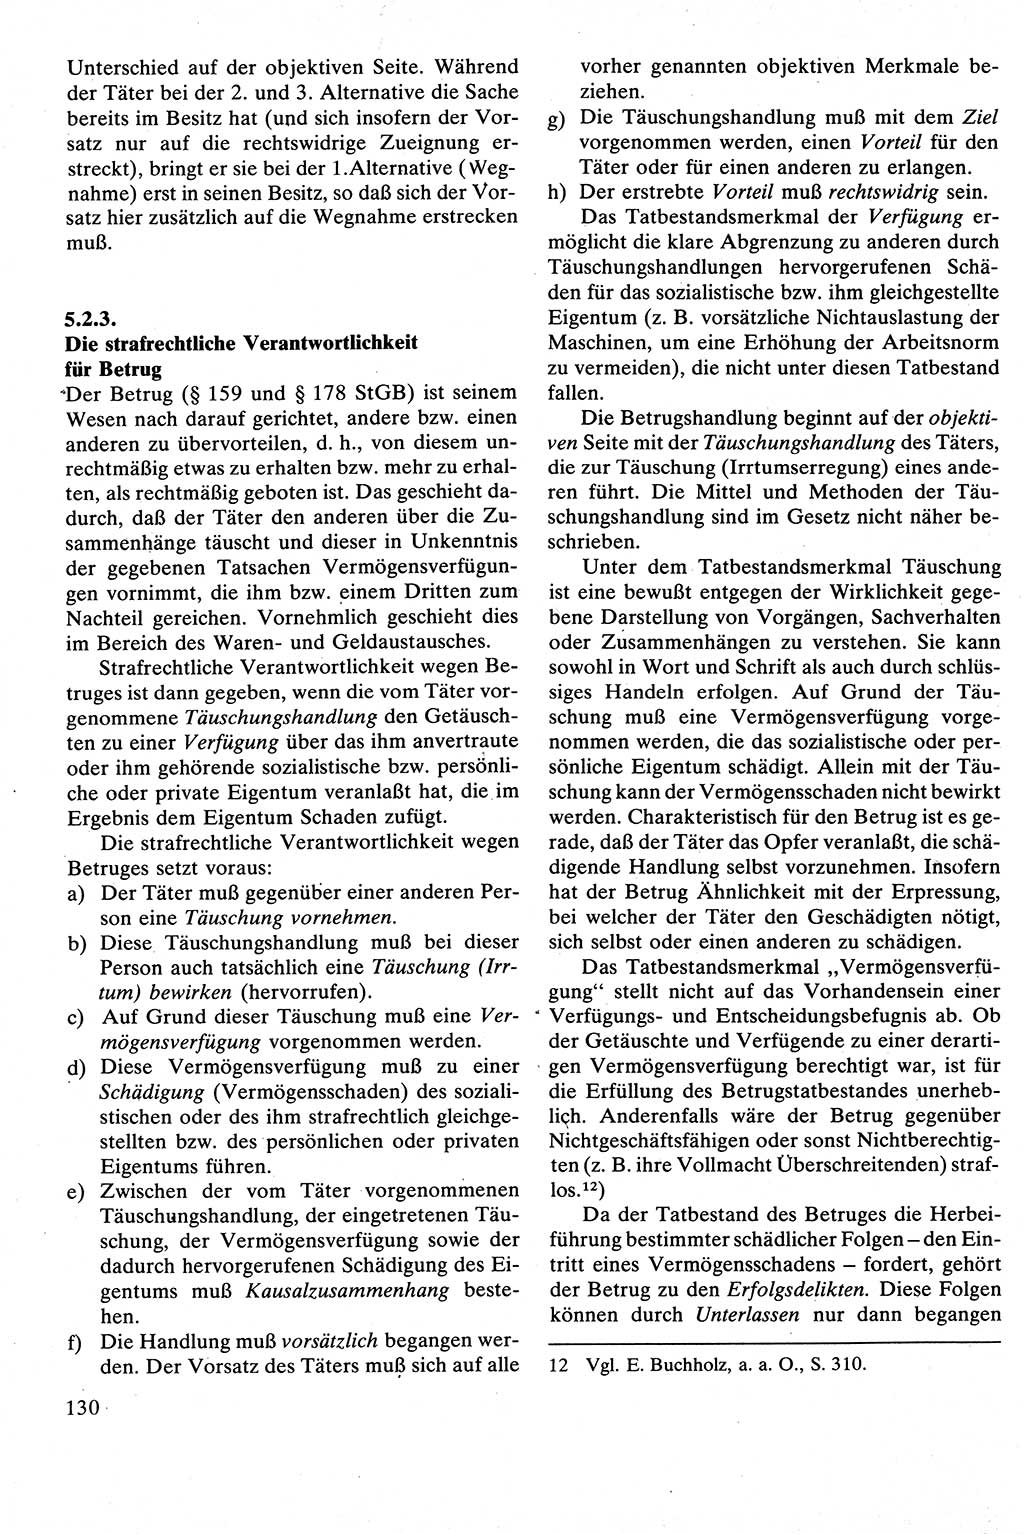 Strafrecht [Deutsche Demokratische Republik (DDR)], Besonderer Teil, Lehrbuch 1981, Seite 130 (Strafr. DDR BT Lb. 1981, S. 130)